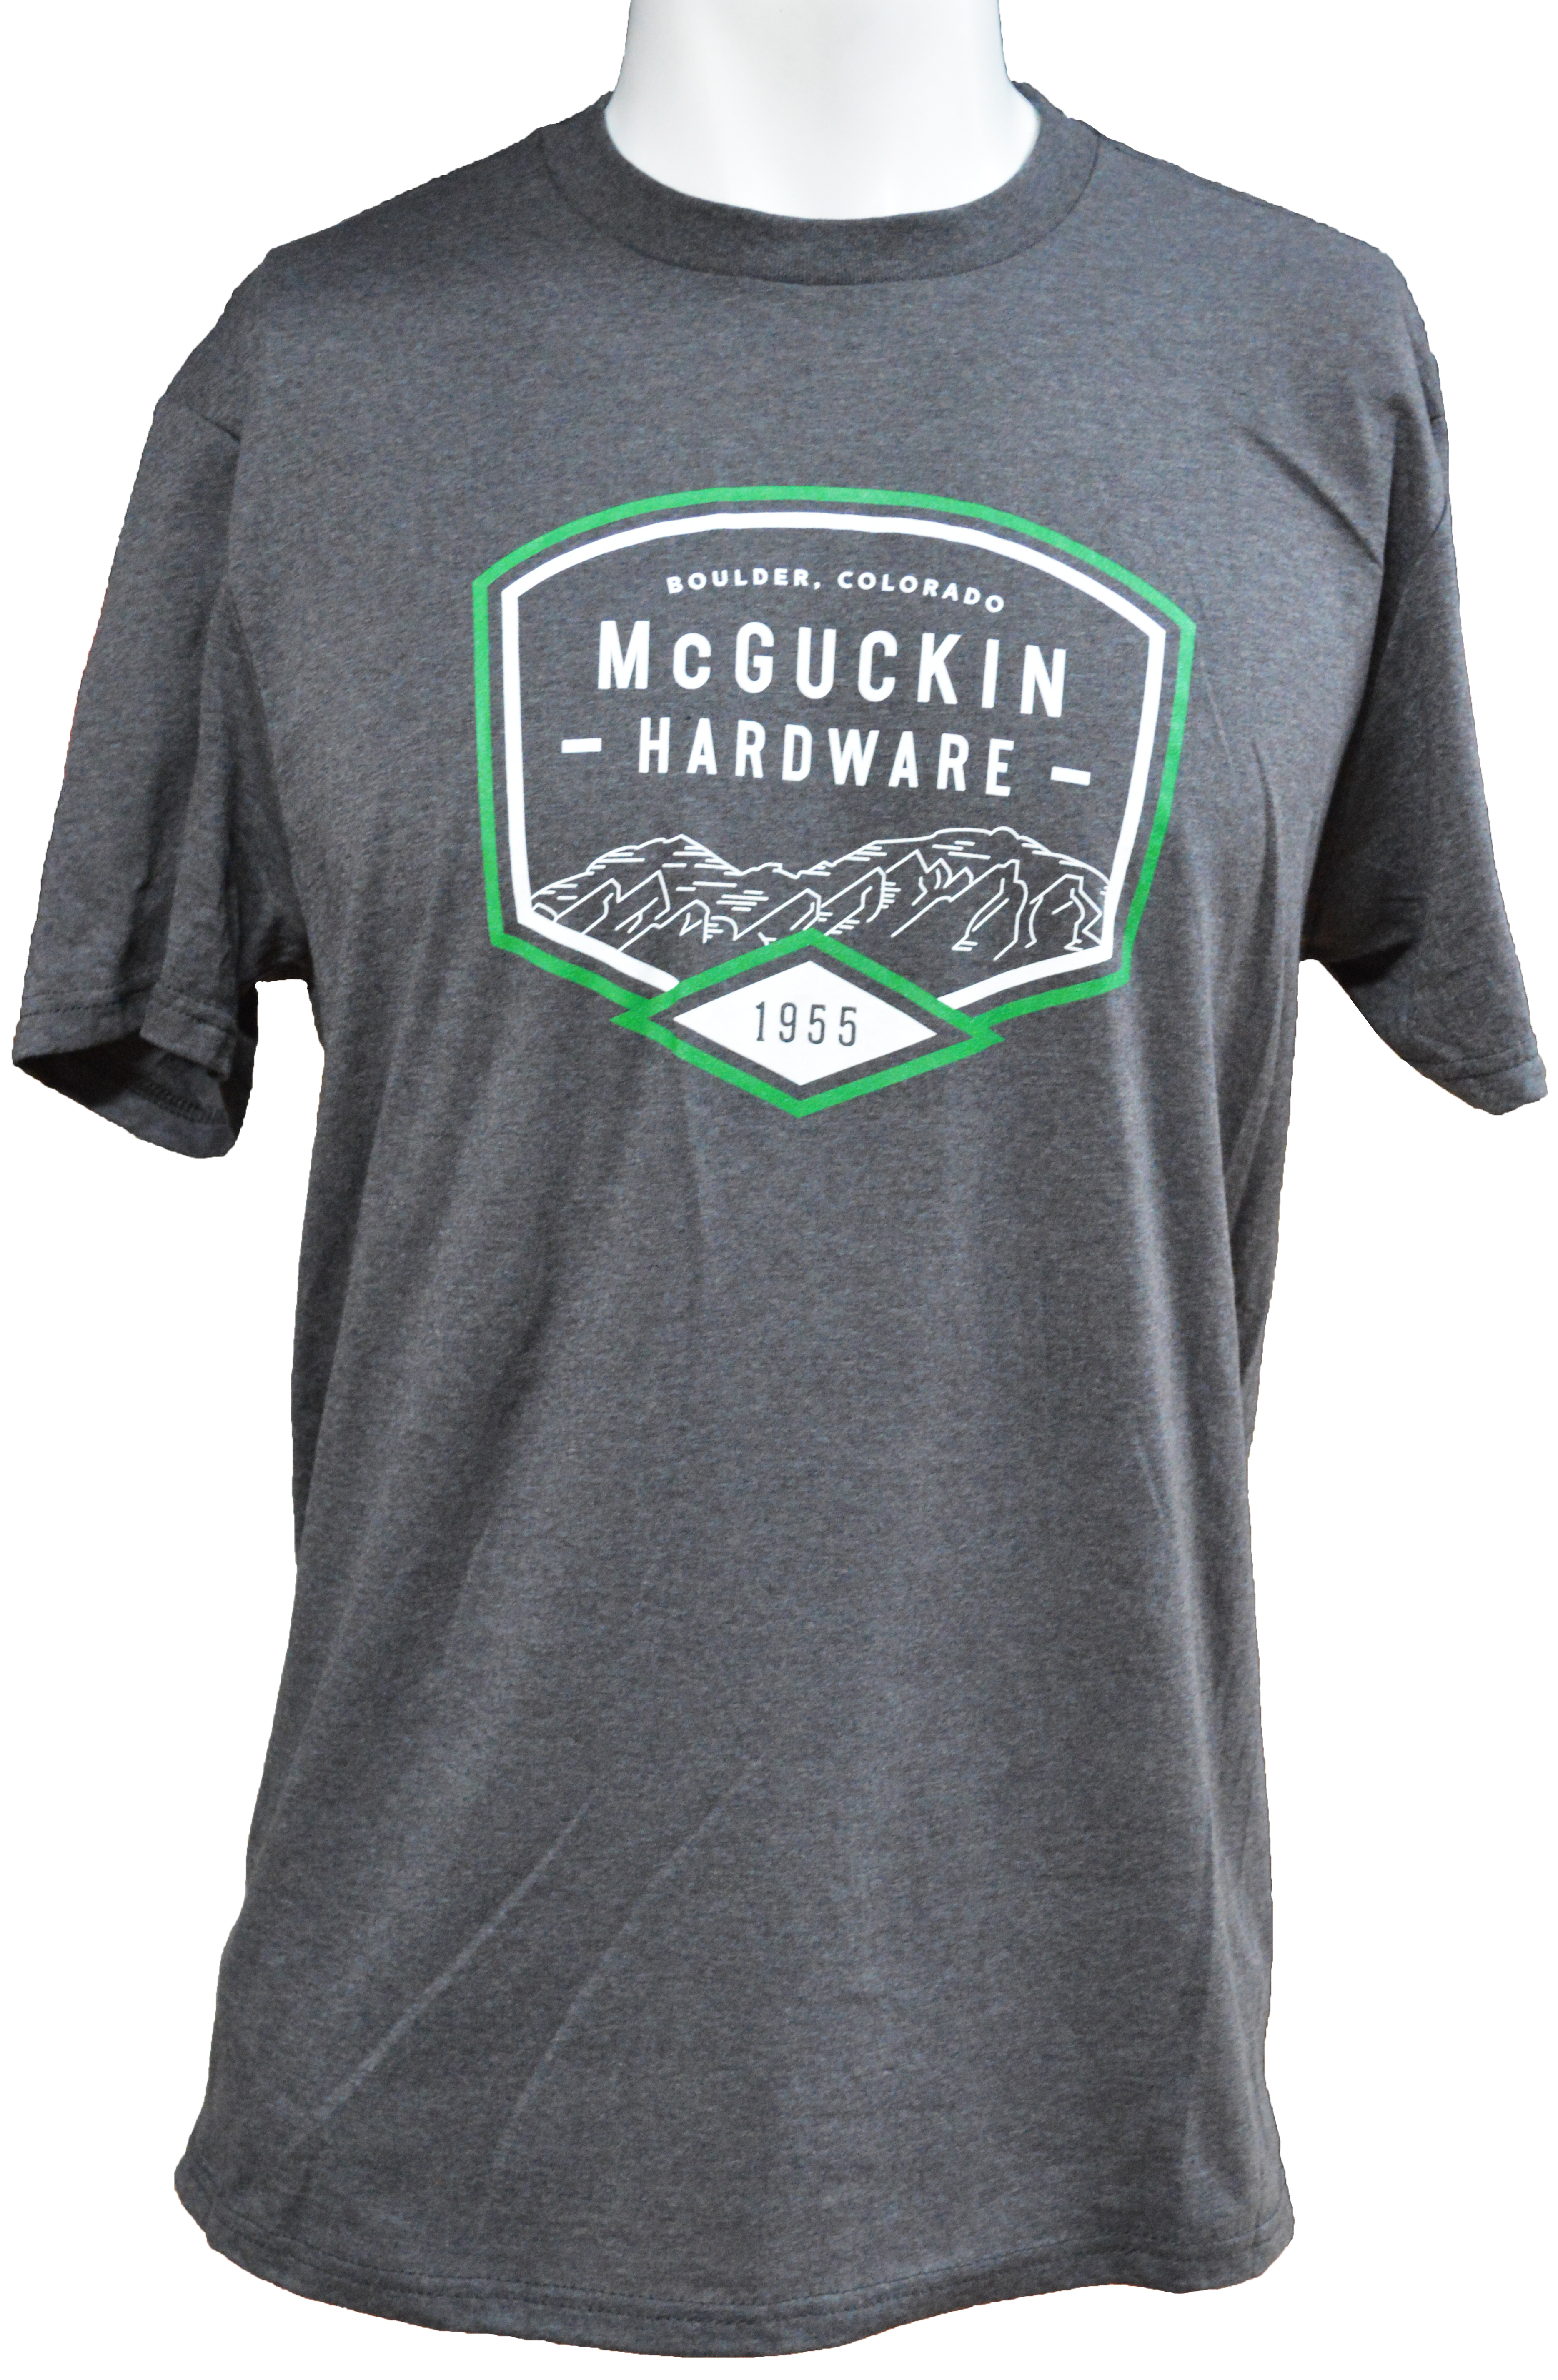 McGuckin B Logo Short Sleeve Top Heather Charcoal, Medium - 1